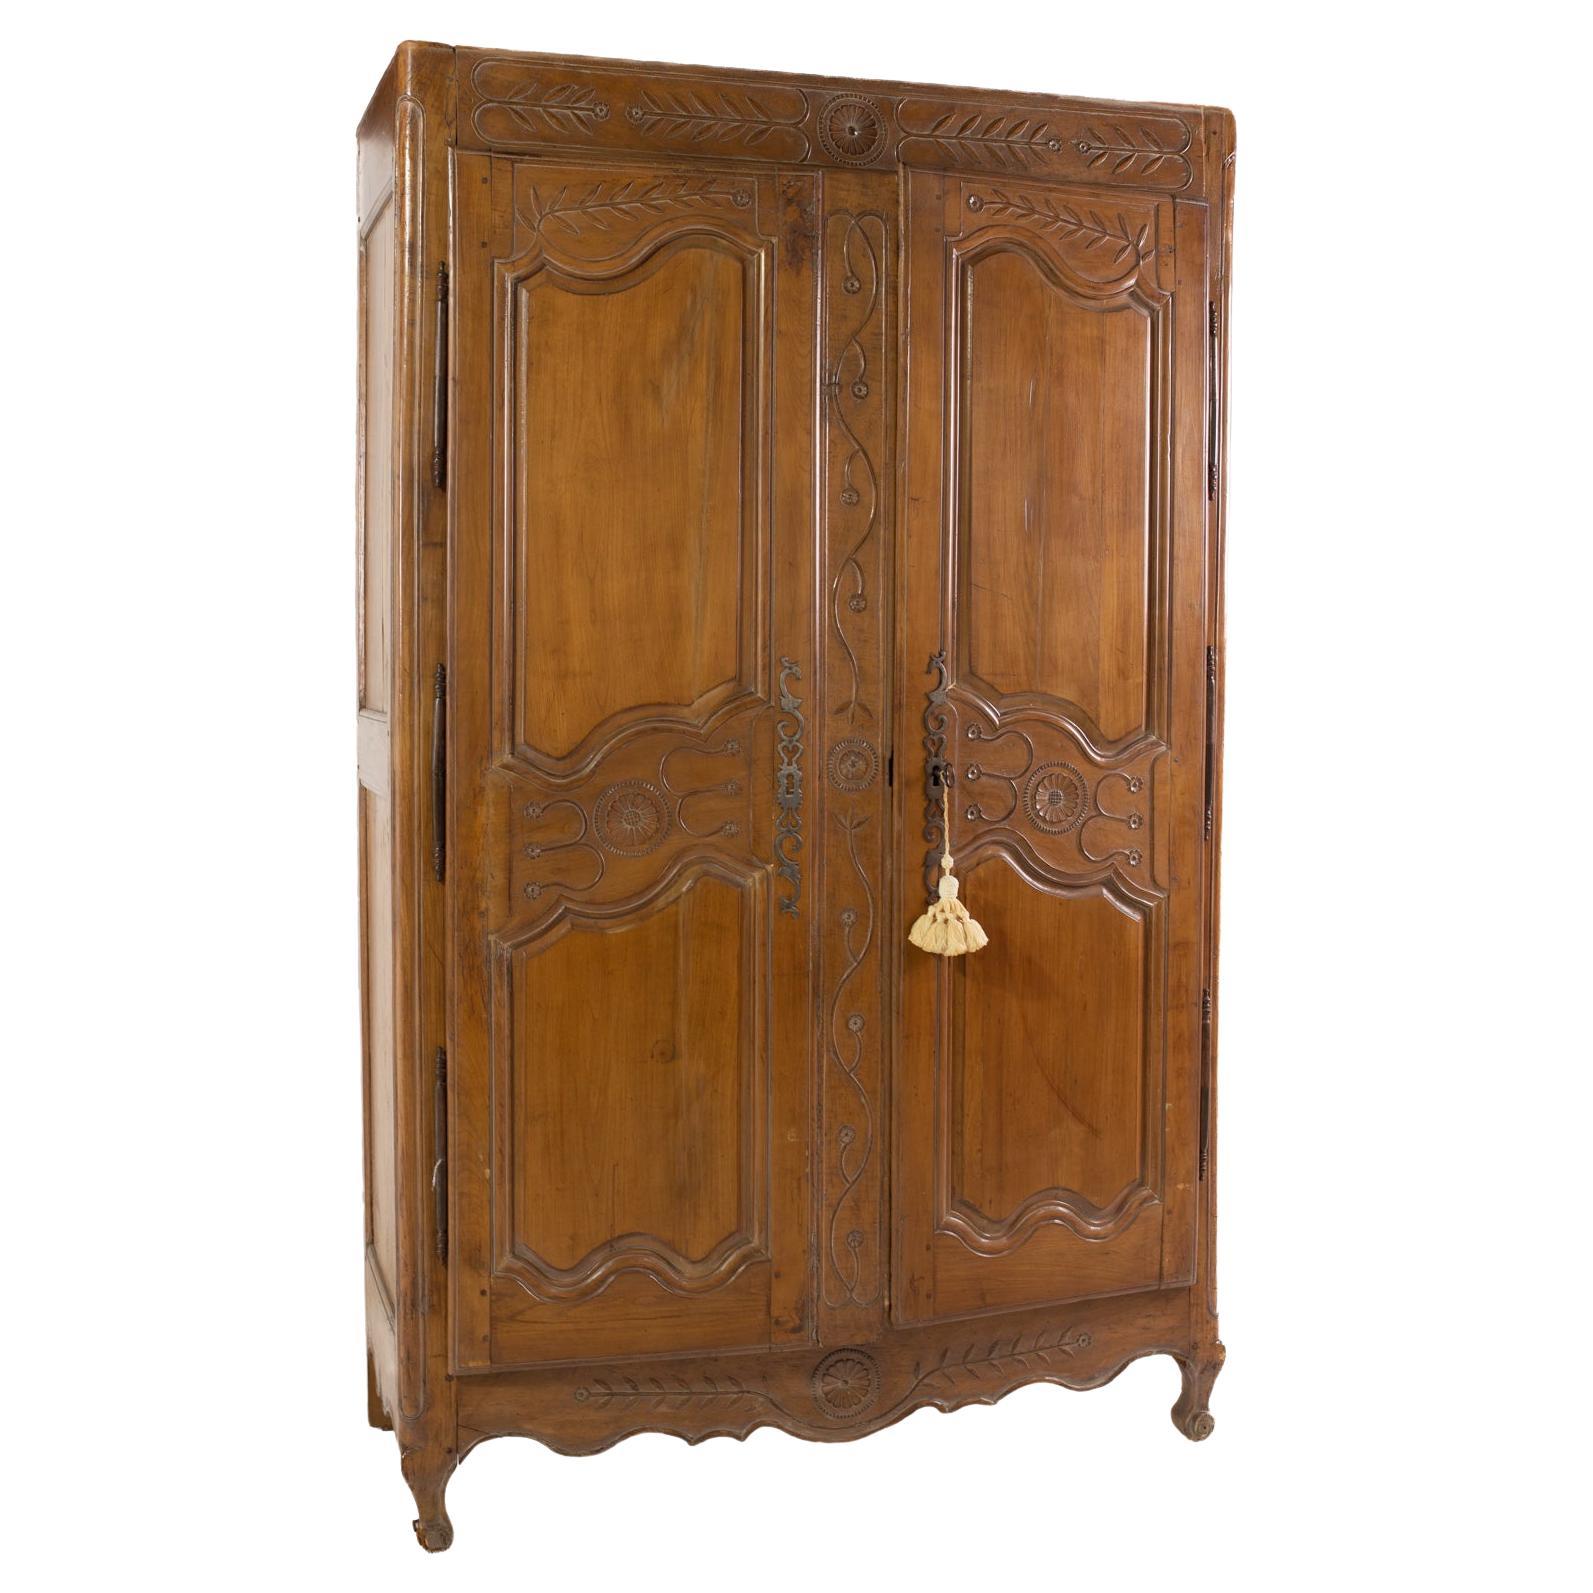 Antique Walnut Wardrobe Armoire Dresser